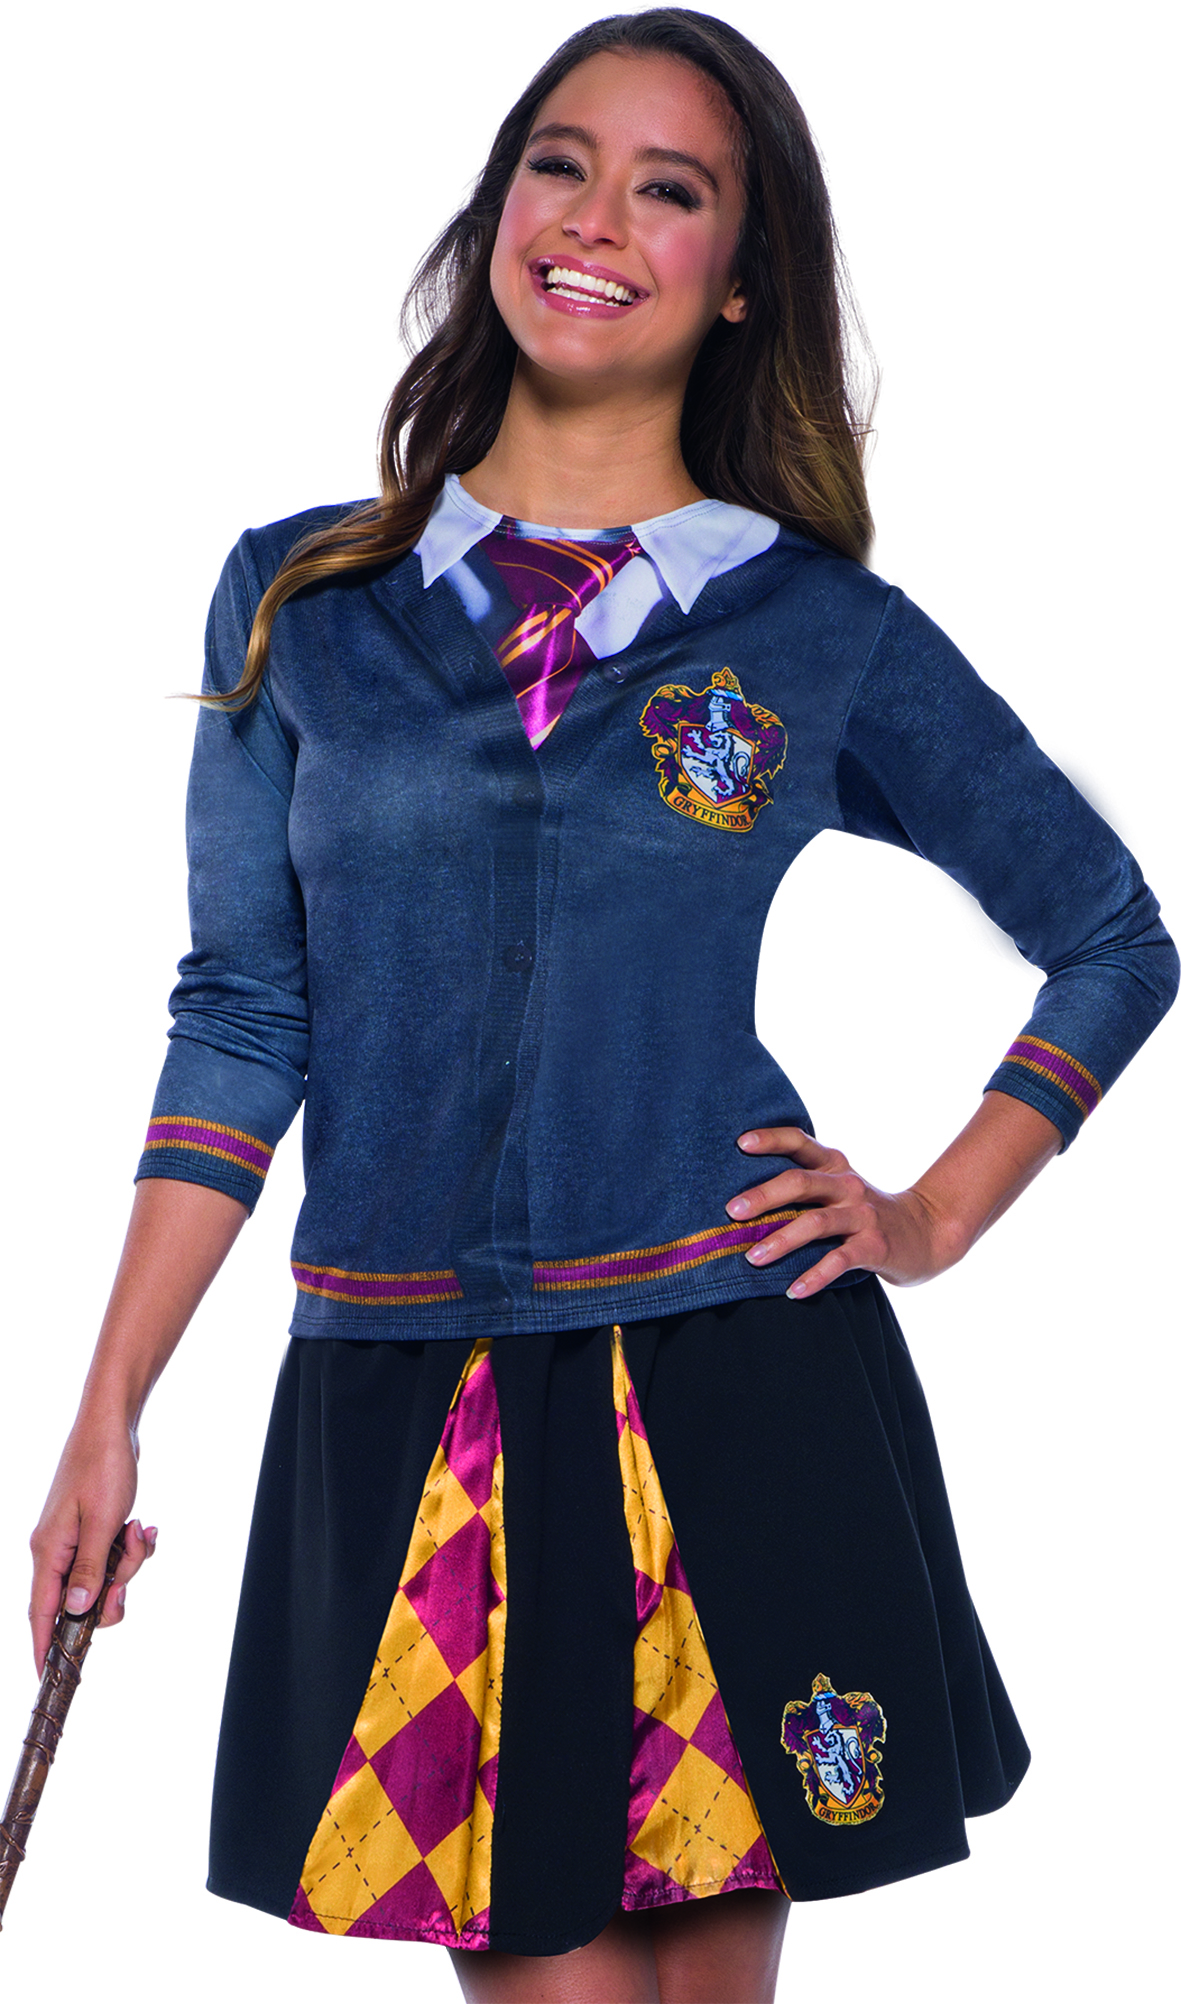 Rubies 3821144 - Harry Potter Gryffindor Top, Adult Schuluniform Hogwarts, S M L